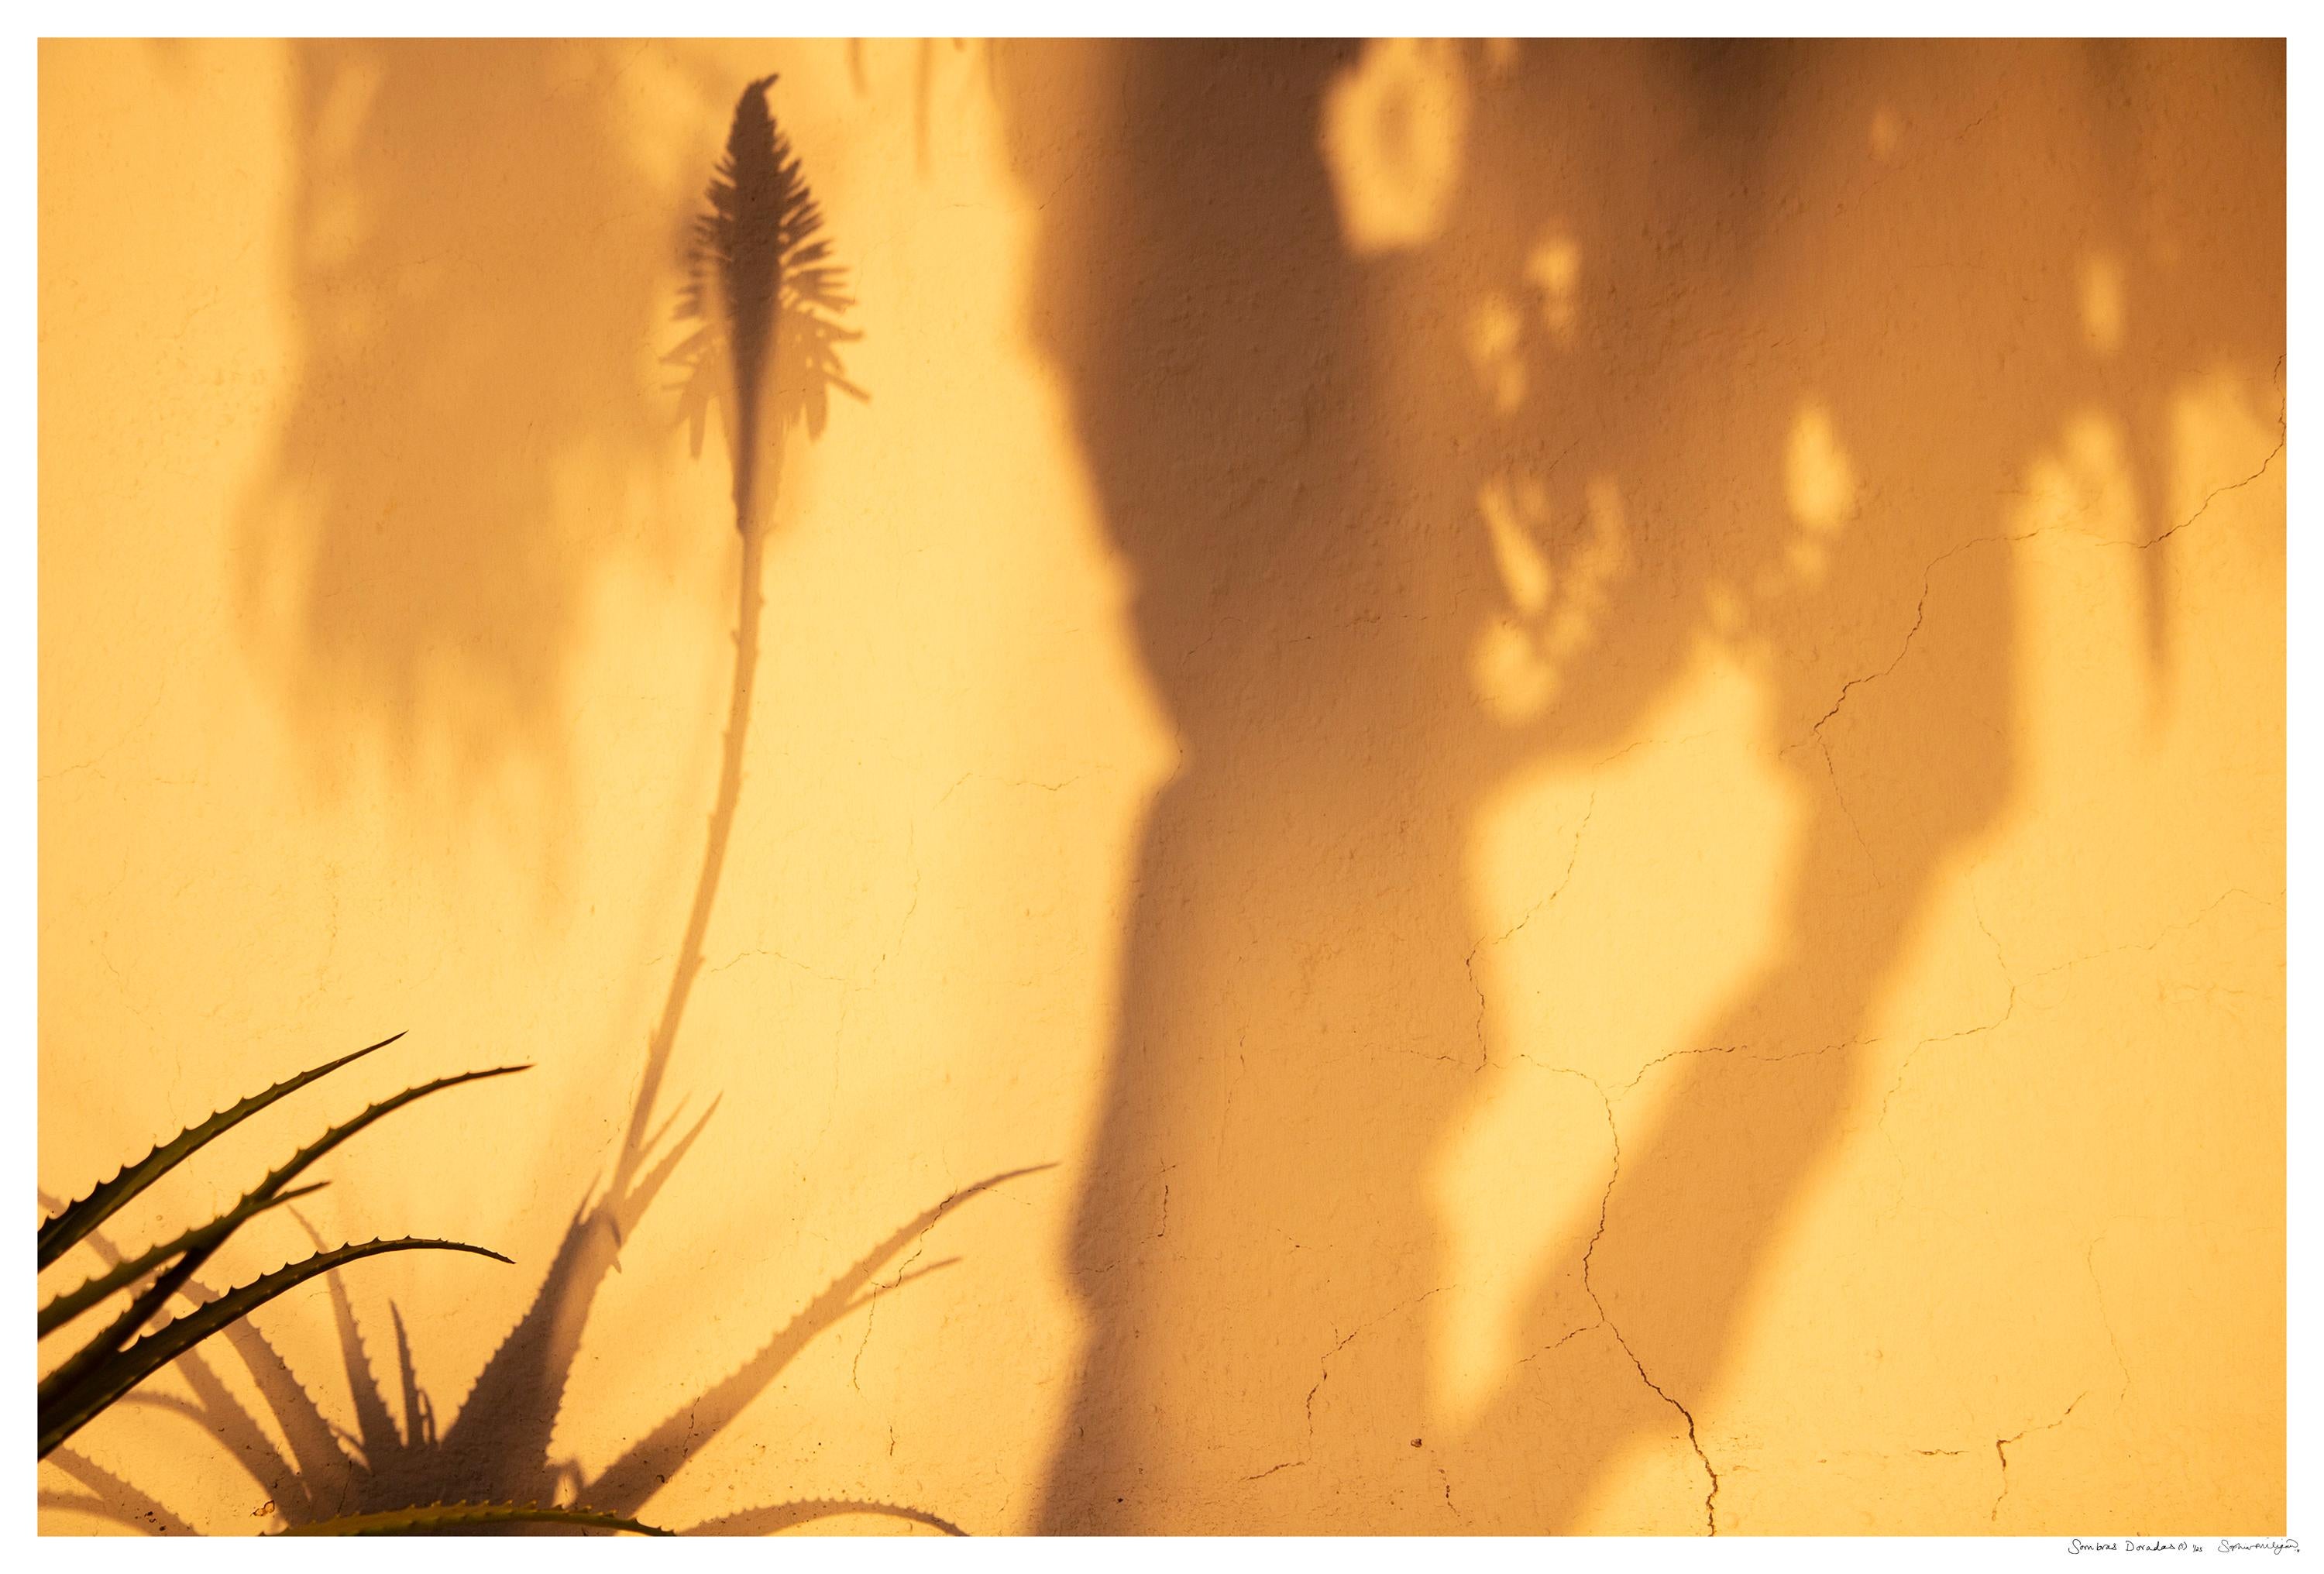 Sombras Doradas (5)' Großformatiges Foto, Wüsten-Silhouette Sonnenuntergang Gelbgold (Orange), Landscape Photograph, von Sophia Milligan